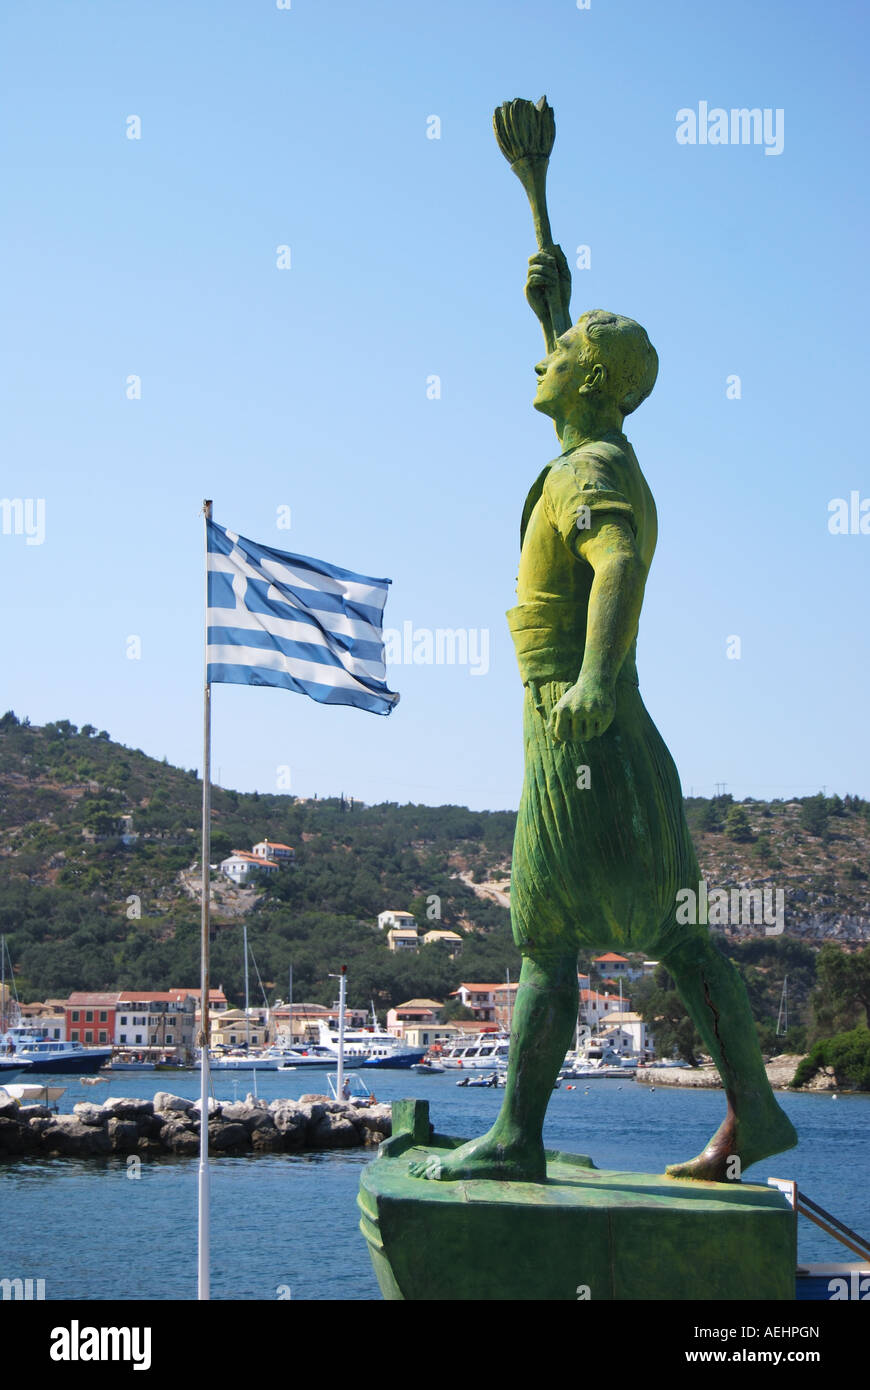 Statue de combattant de la liberté grecque, Geogios Anemogiannis Gaois, Port, Gaois, Paxos, îles Ioniennes, Grèce Banque D'Images